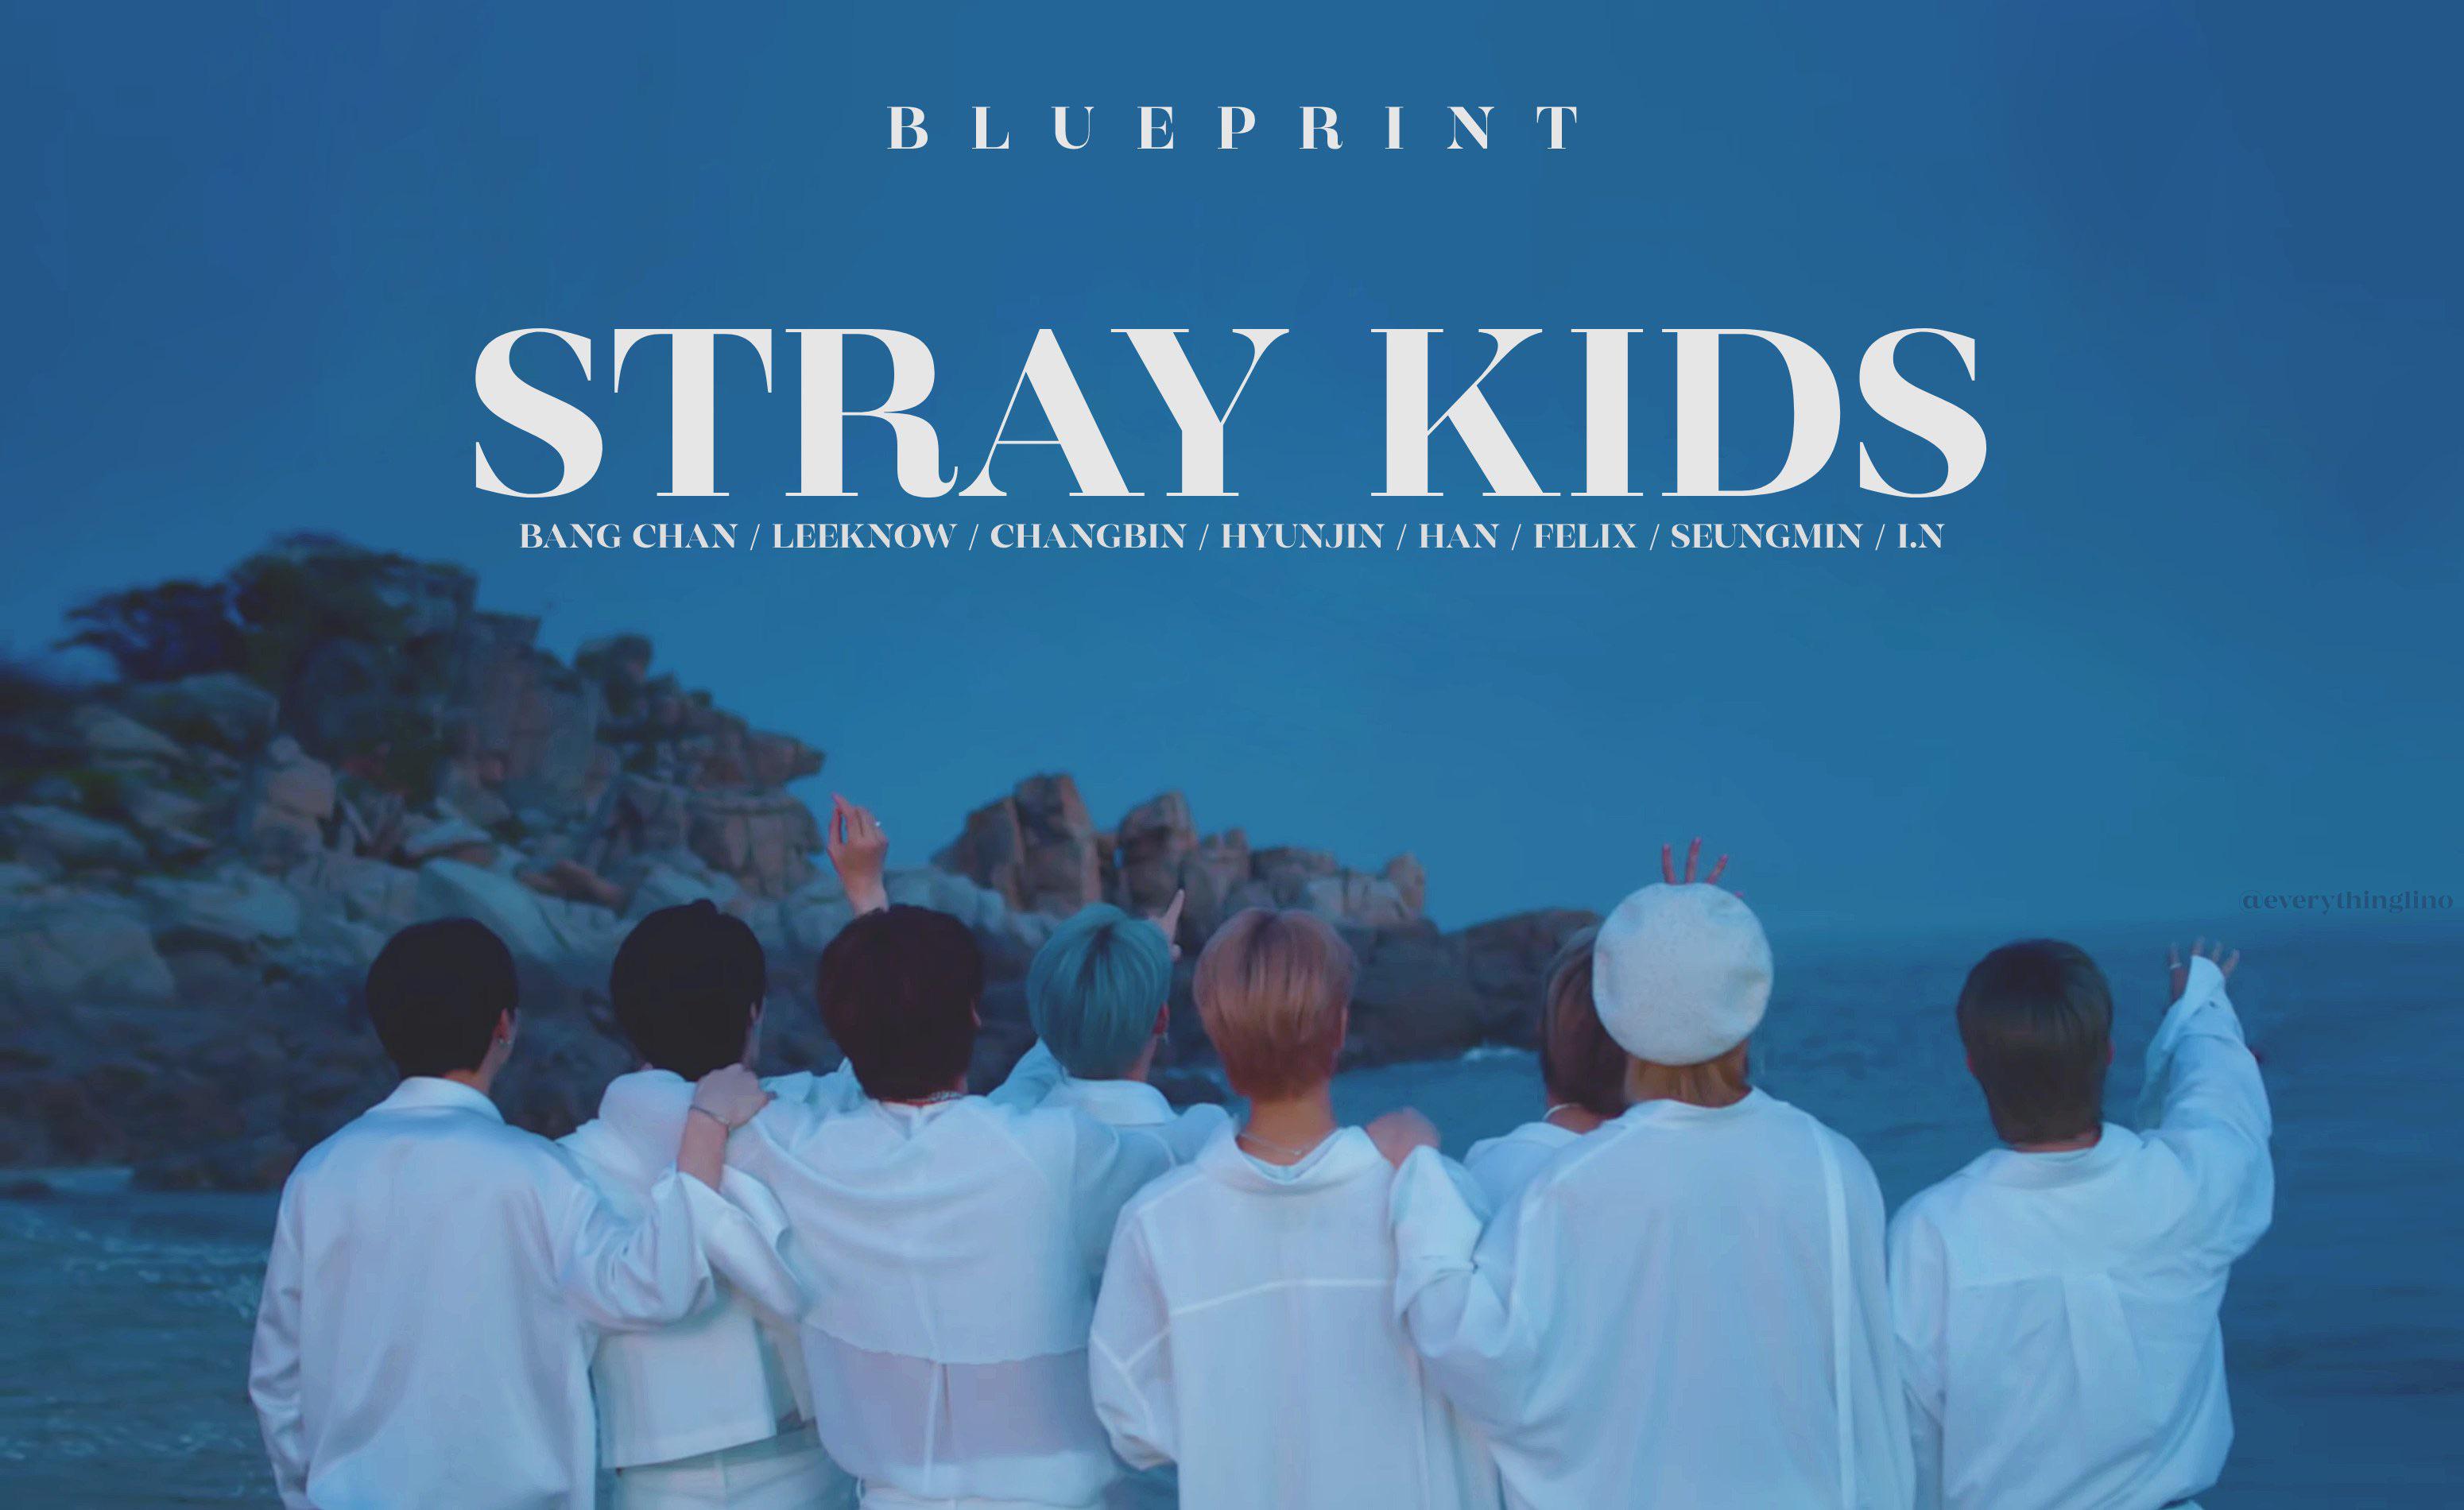 I made some Stray Kids “Blueprint” Desktop wallpaper (Download link in comments)